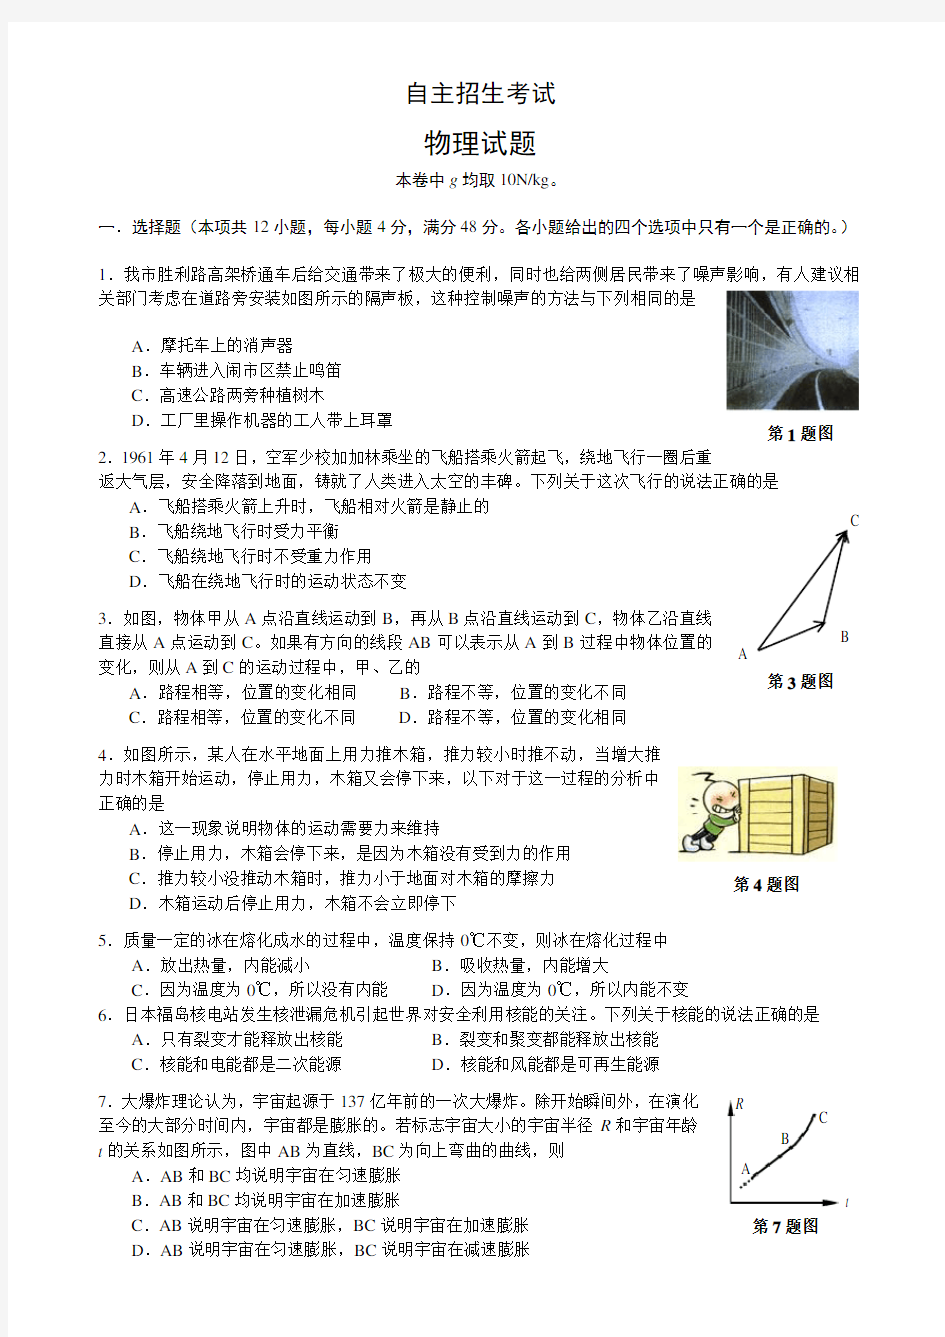 2011年蚌埠二中理科实验班招生物理试题及答案 (1)